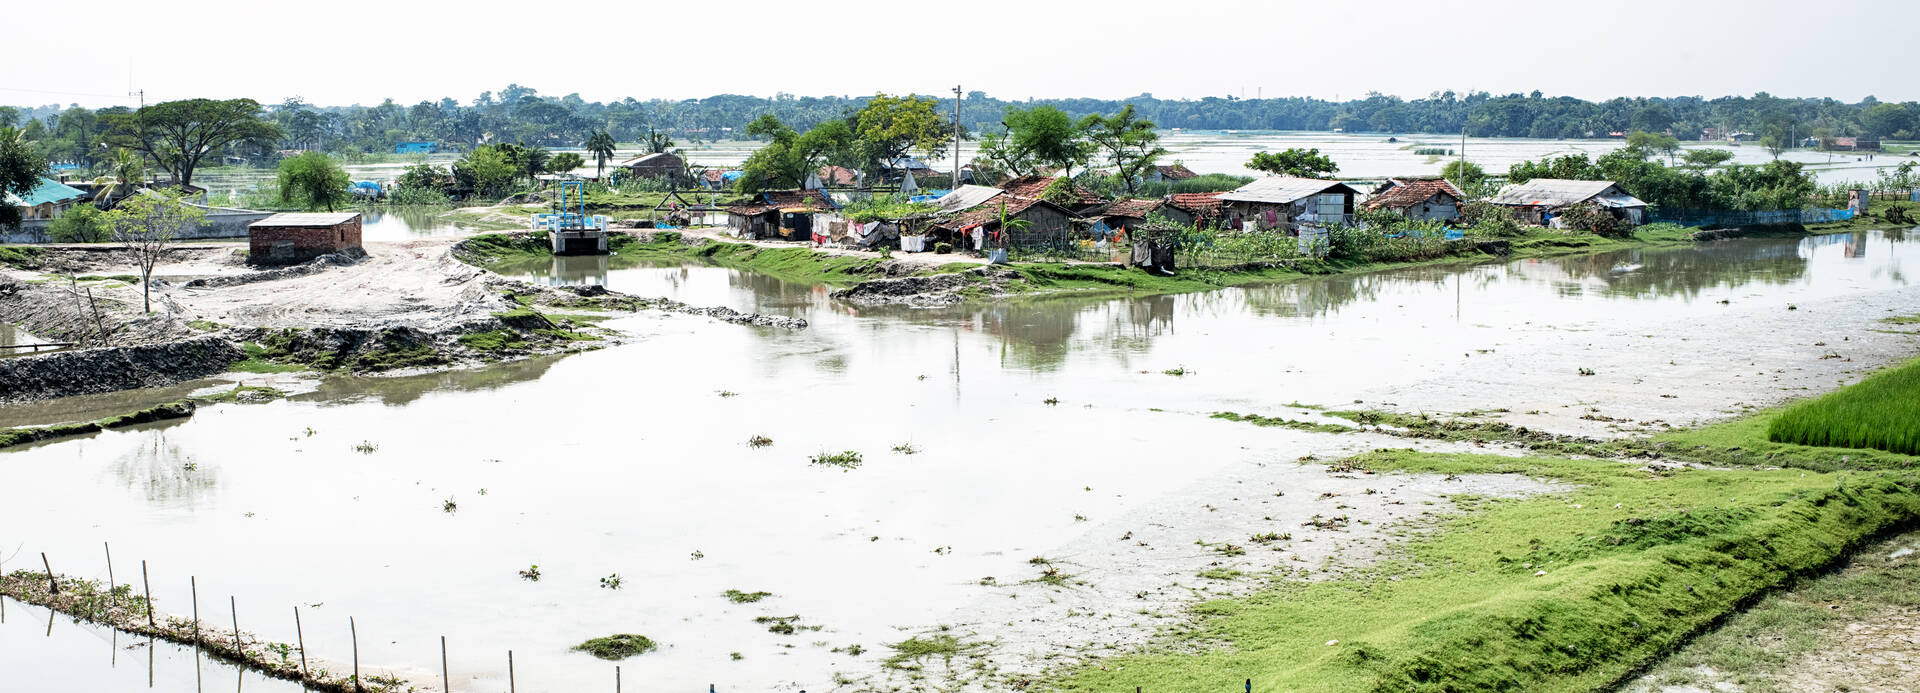 Überflutete Felder und Häuser in Bangladesch